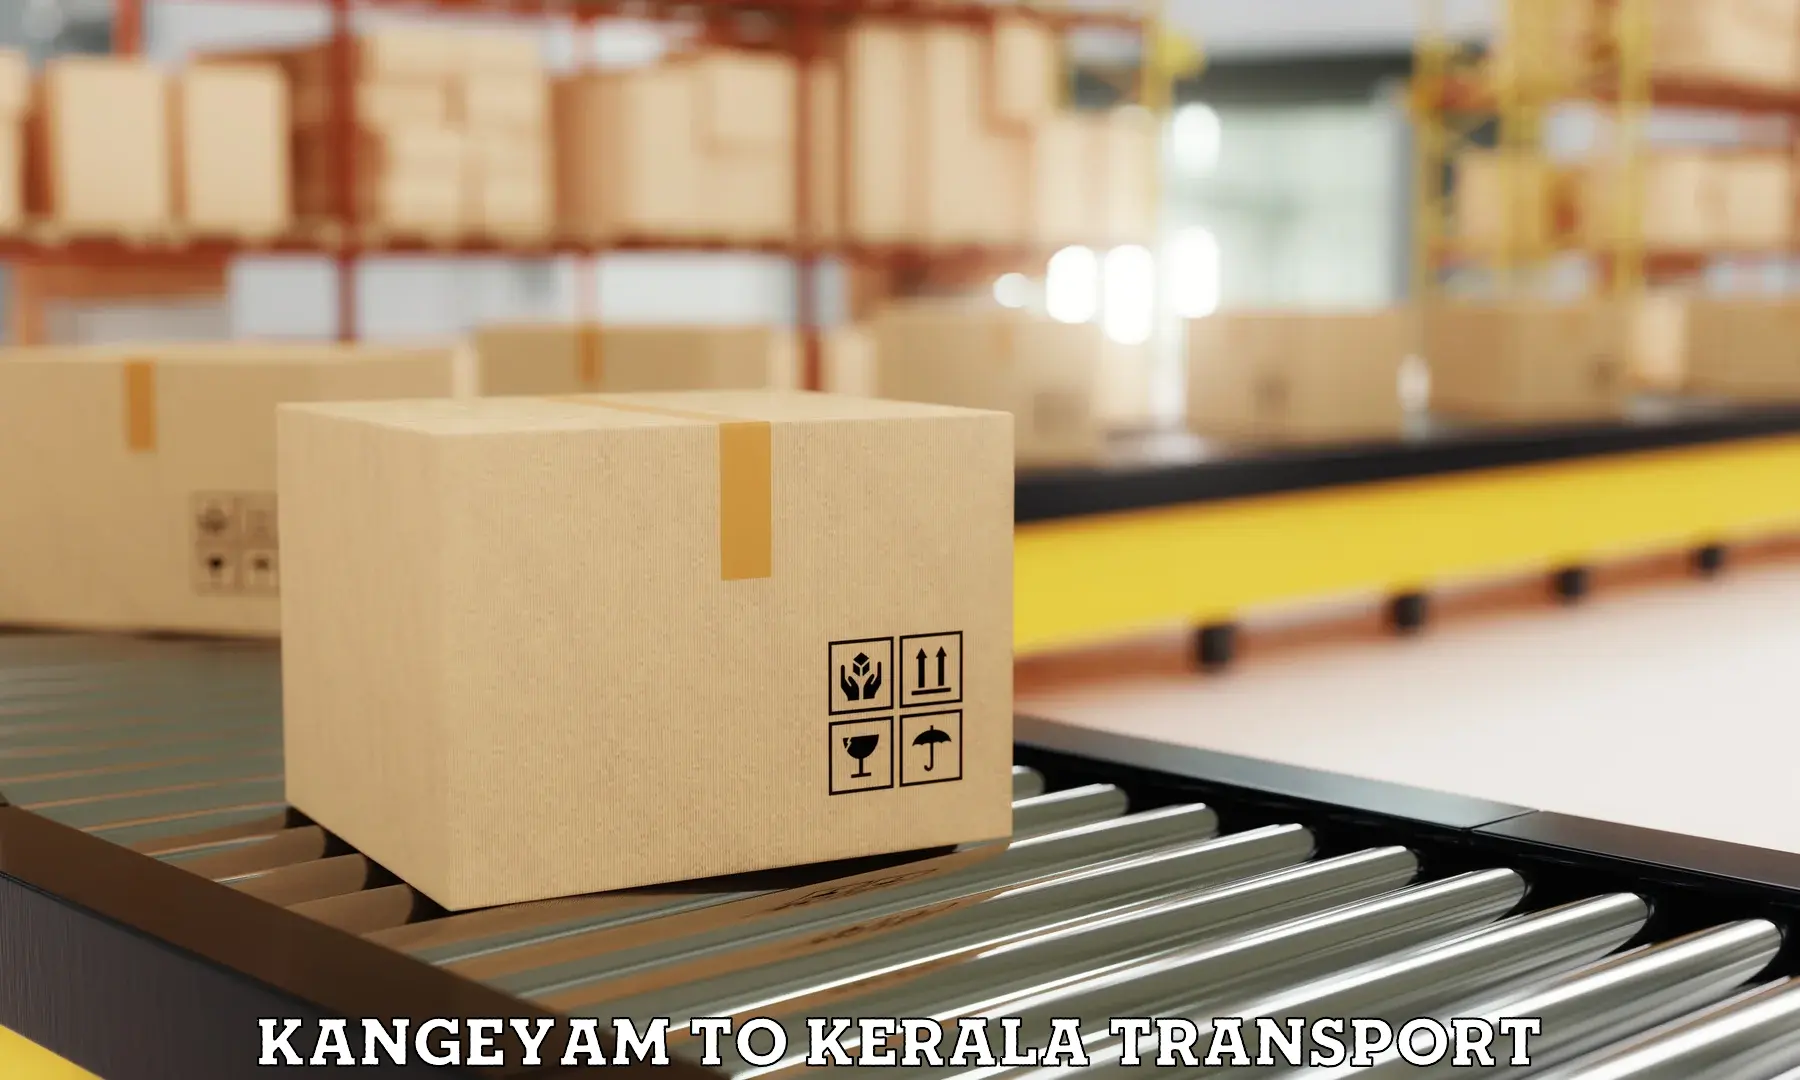 Daily parcel service transport Kangeyam to Kerala